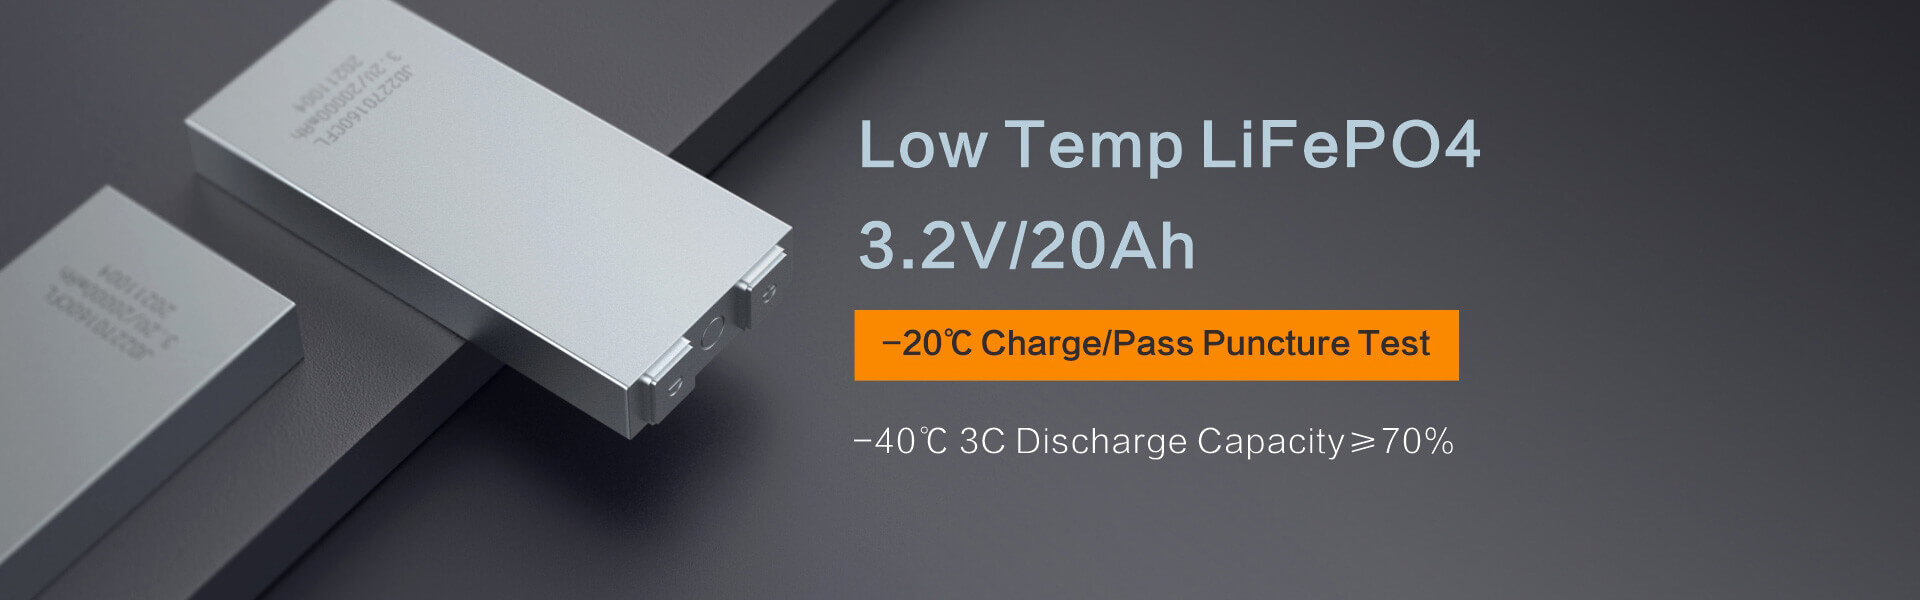 Low Temperature LiFePO4 3.2V 20Ah